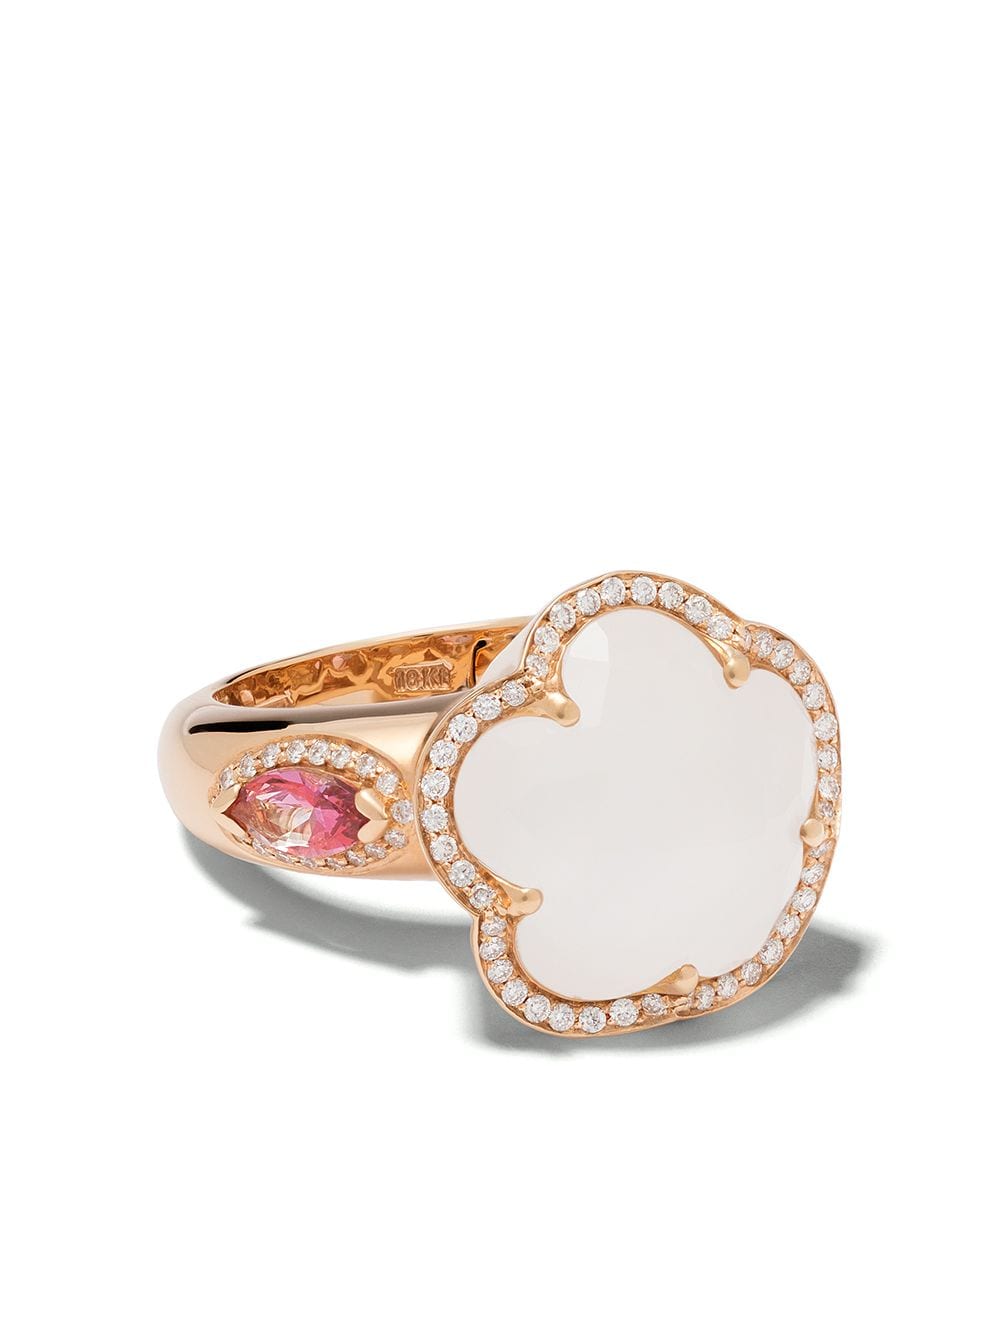 фото Pasquale bruni кольцо bon ton из розового золота с бриллиантами